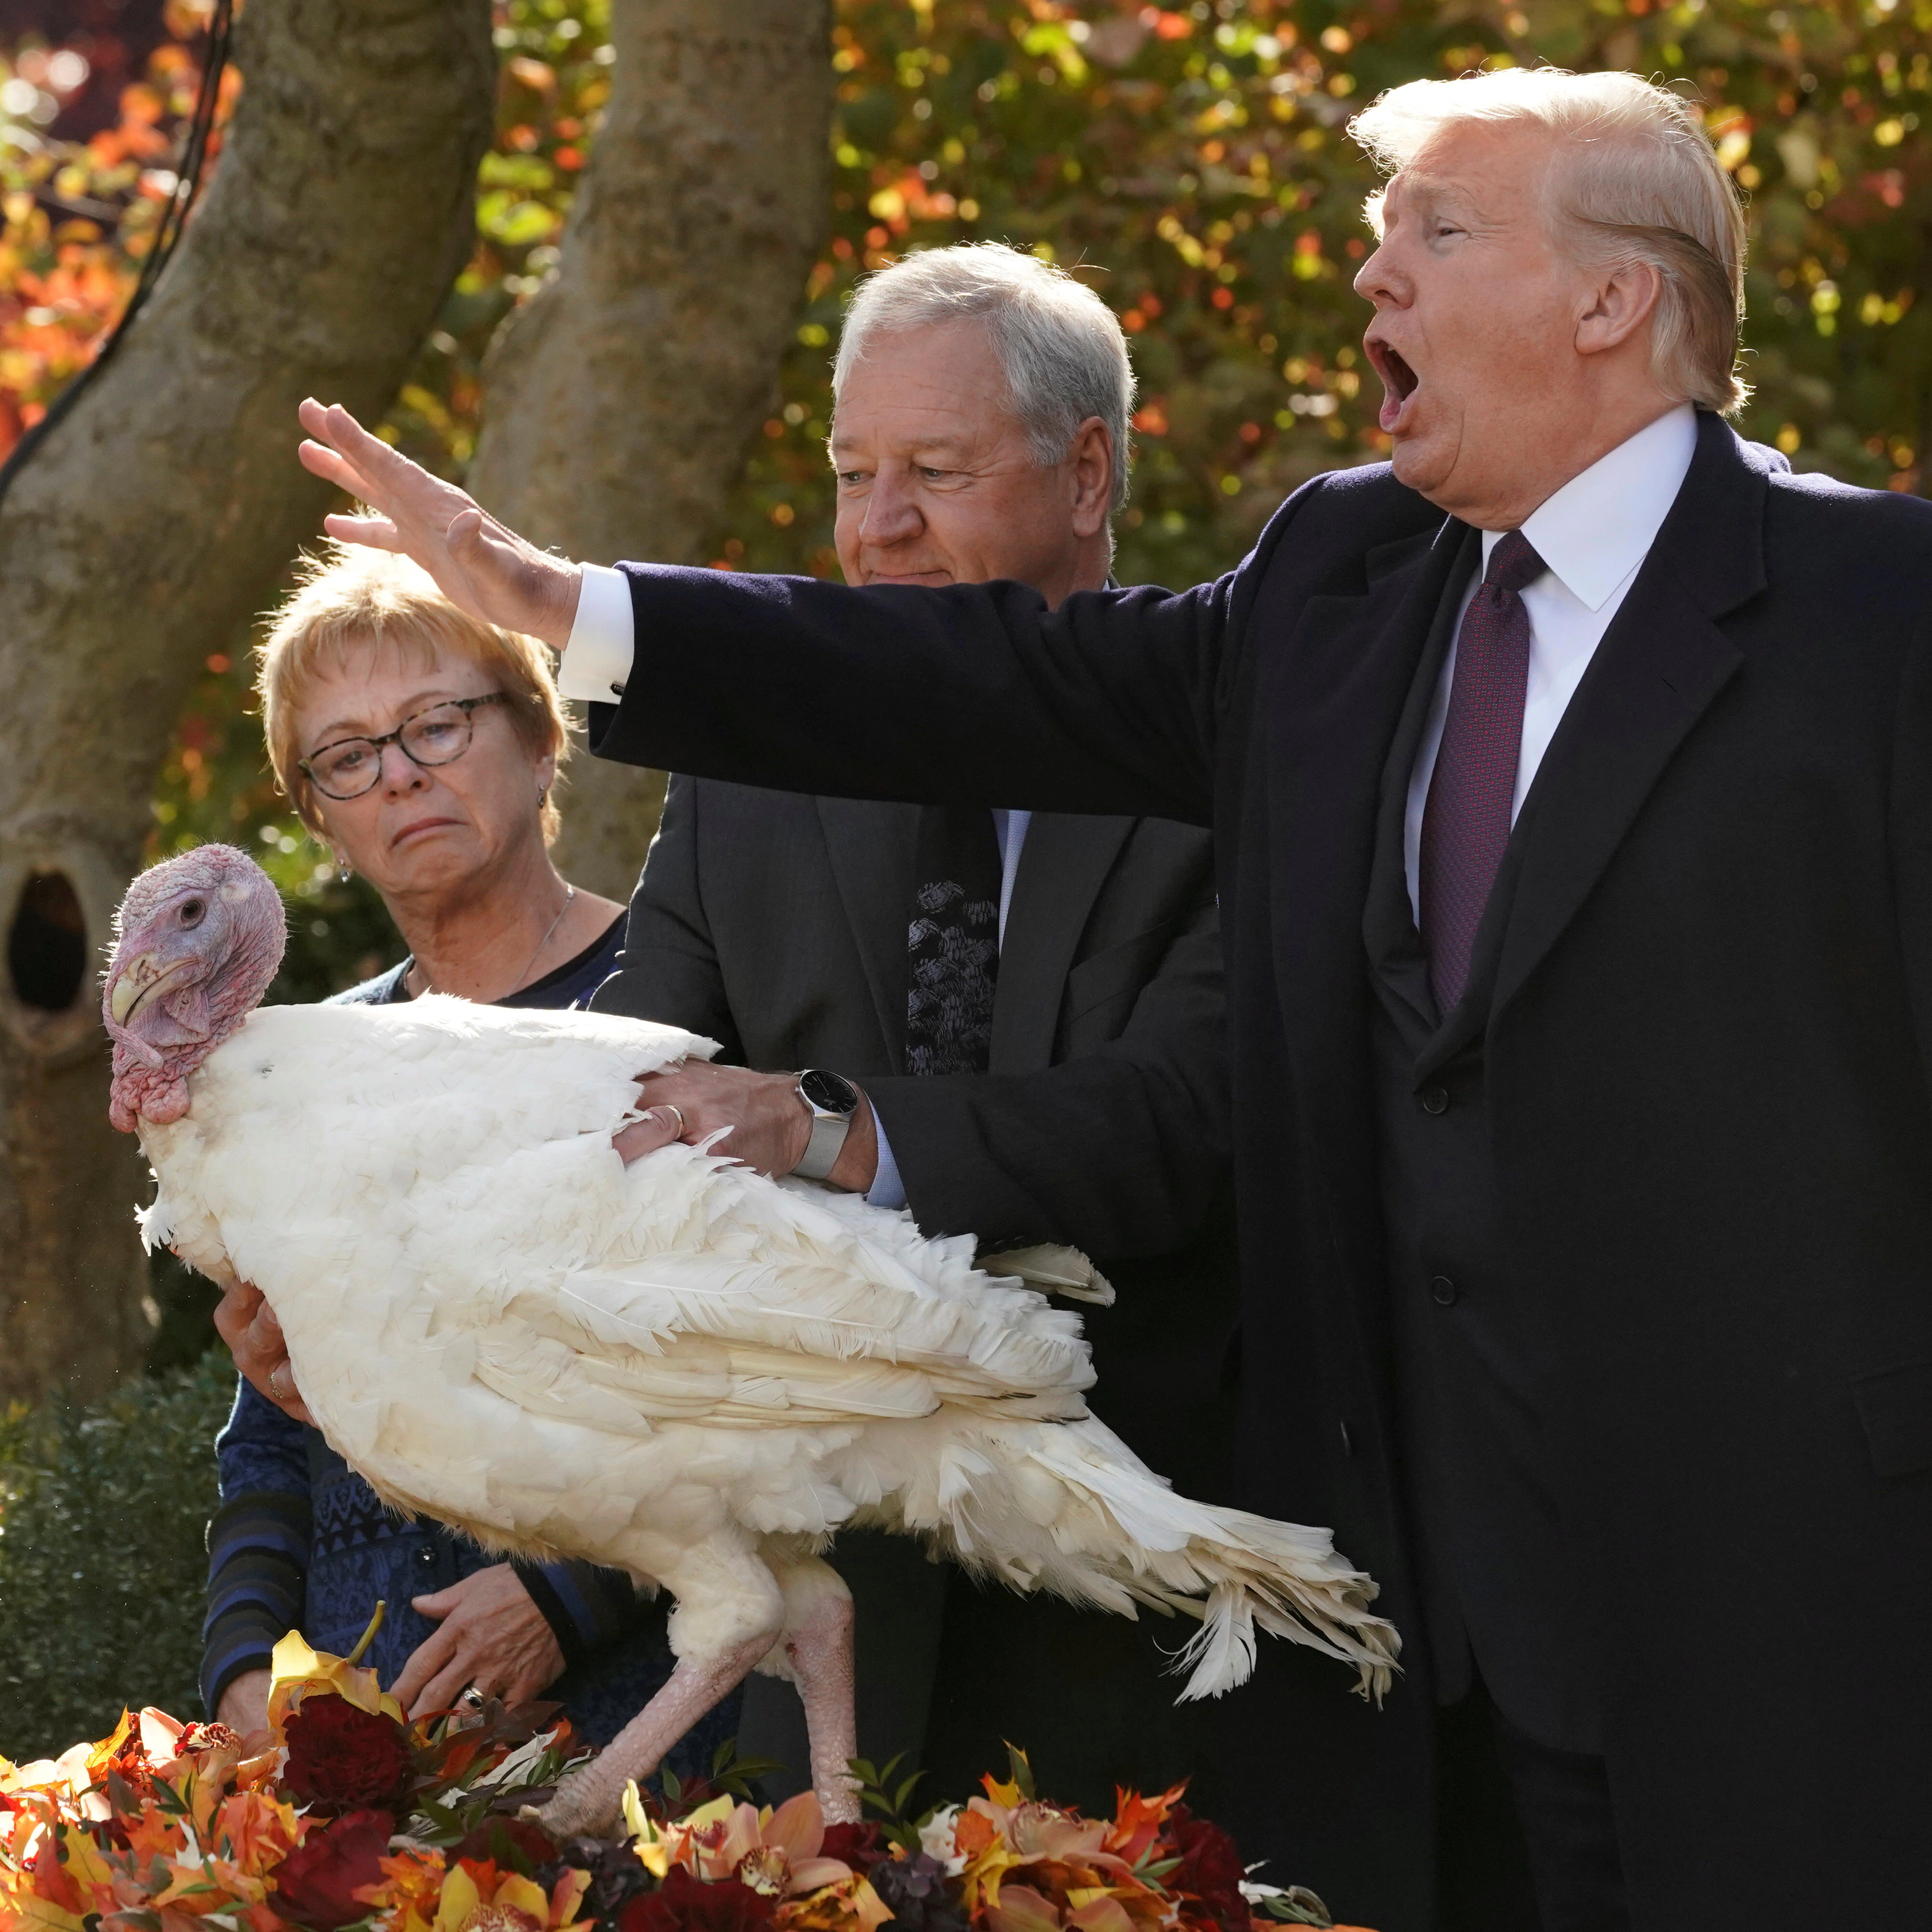 Imagen secundaria 1 - En la imagen superior, un pavo asado preside el banquete familiar. Abajo, Trump y Bush, presidente y expresidente de Estados Unidos, respectivamente, perdonan a un pavo durante el Día de Acción de Gracias. 